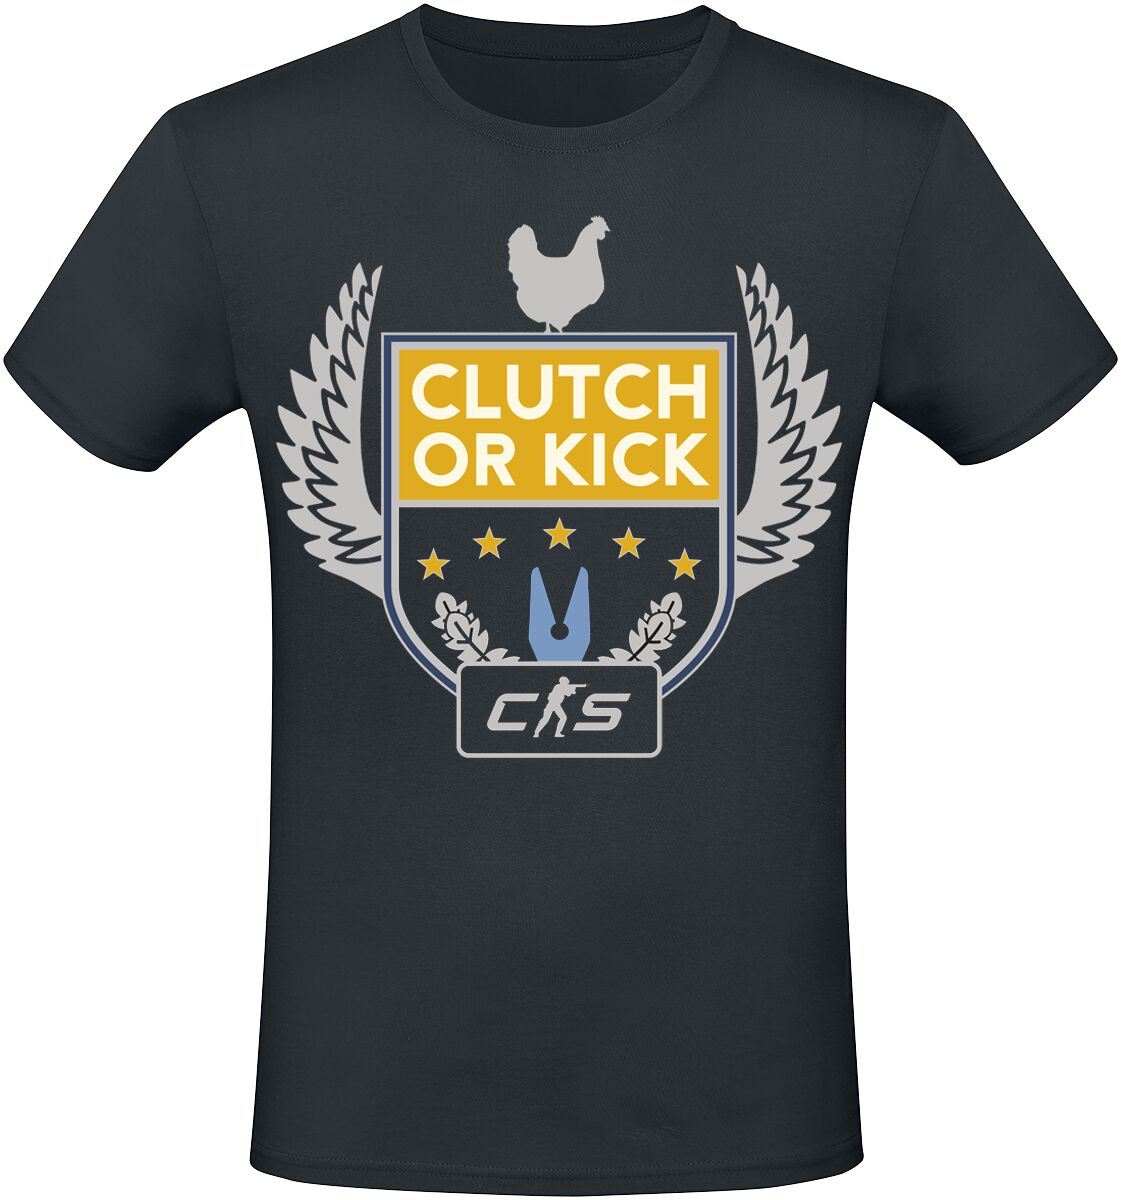 Counter-Strike - Gaming T-Shirt - 2 - Clutch Or Kick - S bis XXL - für Männer - Größe XXL - schwarz  - EMP exklusives Merchandise!